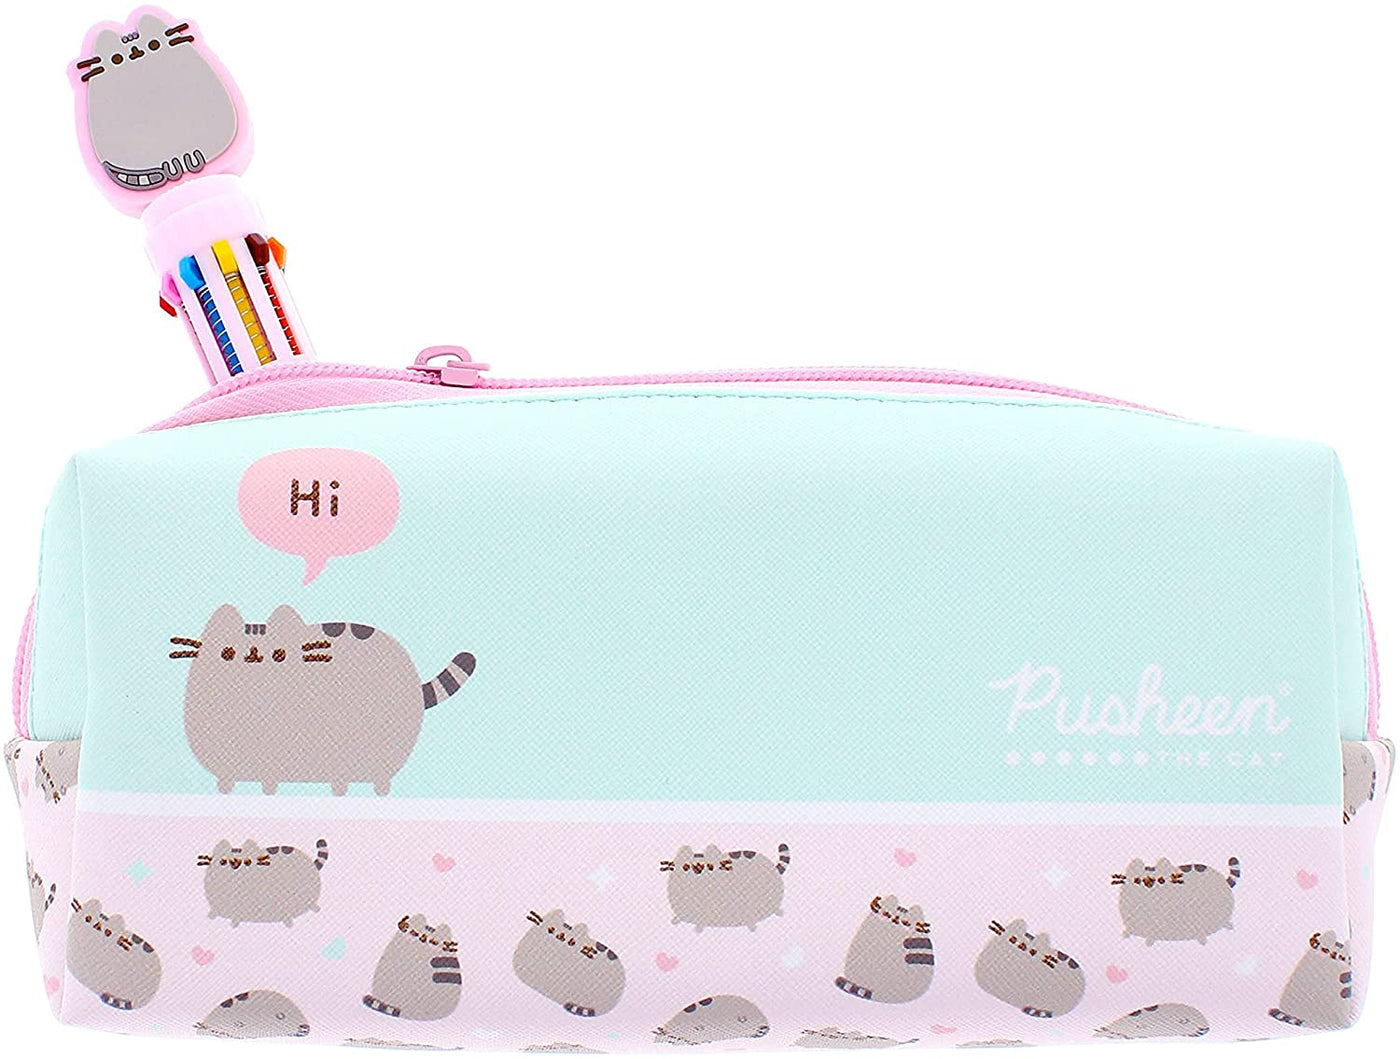 Pusheen pencil case – Cute Kittie